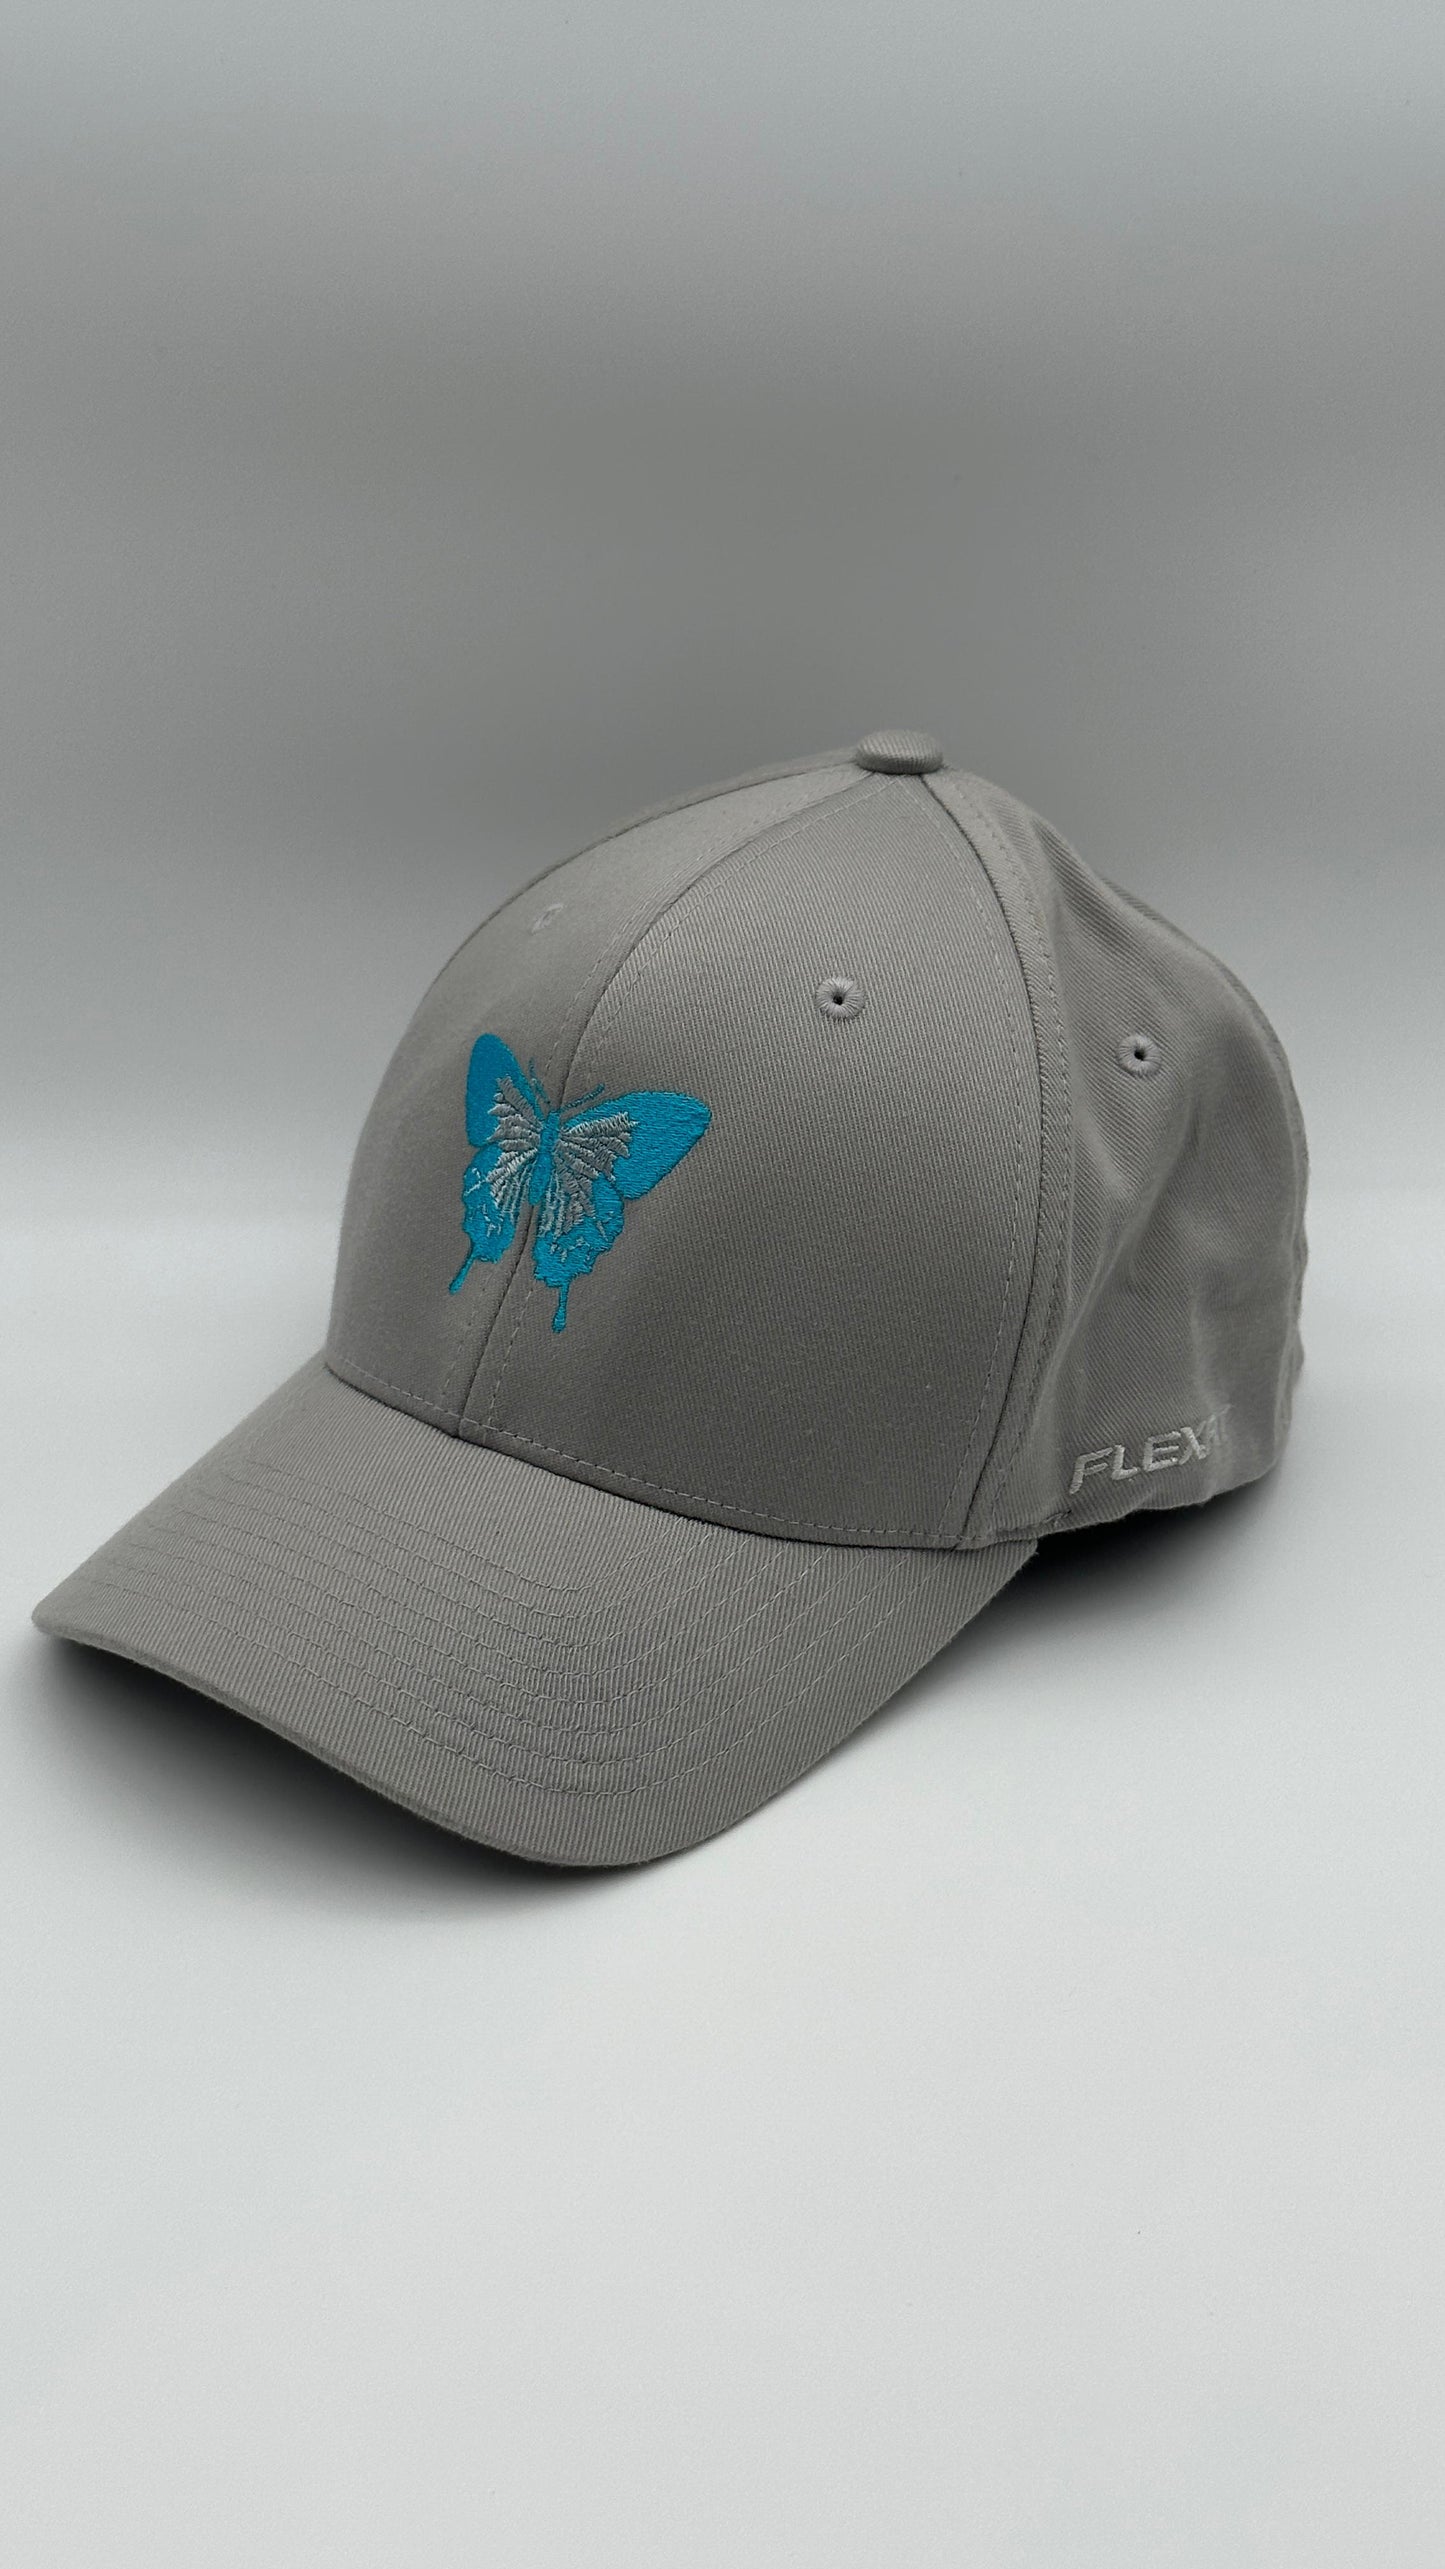 Butterfly Cap Blue on Grey